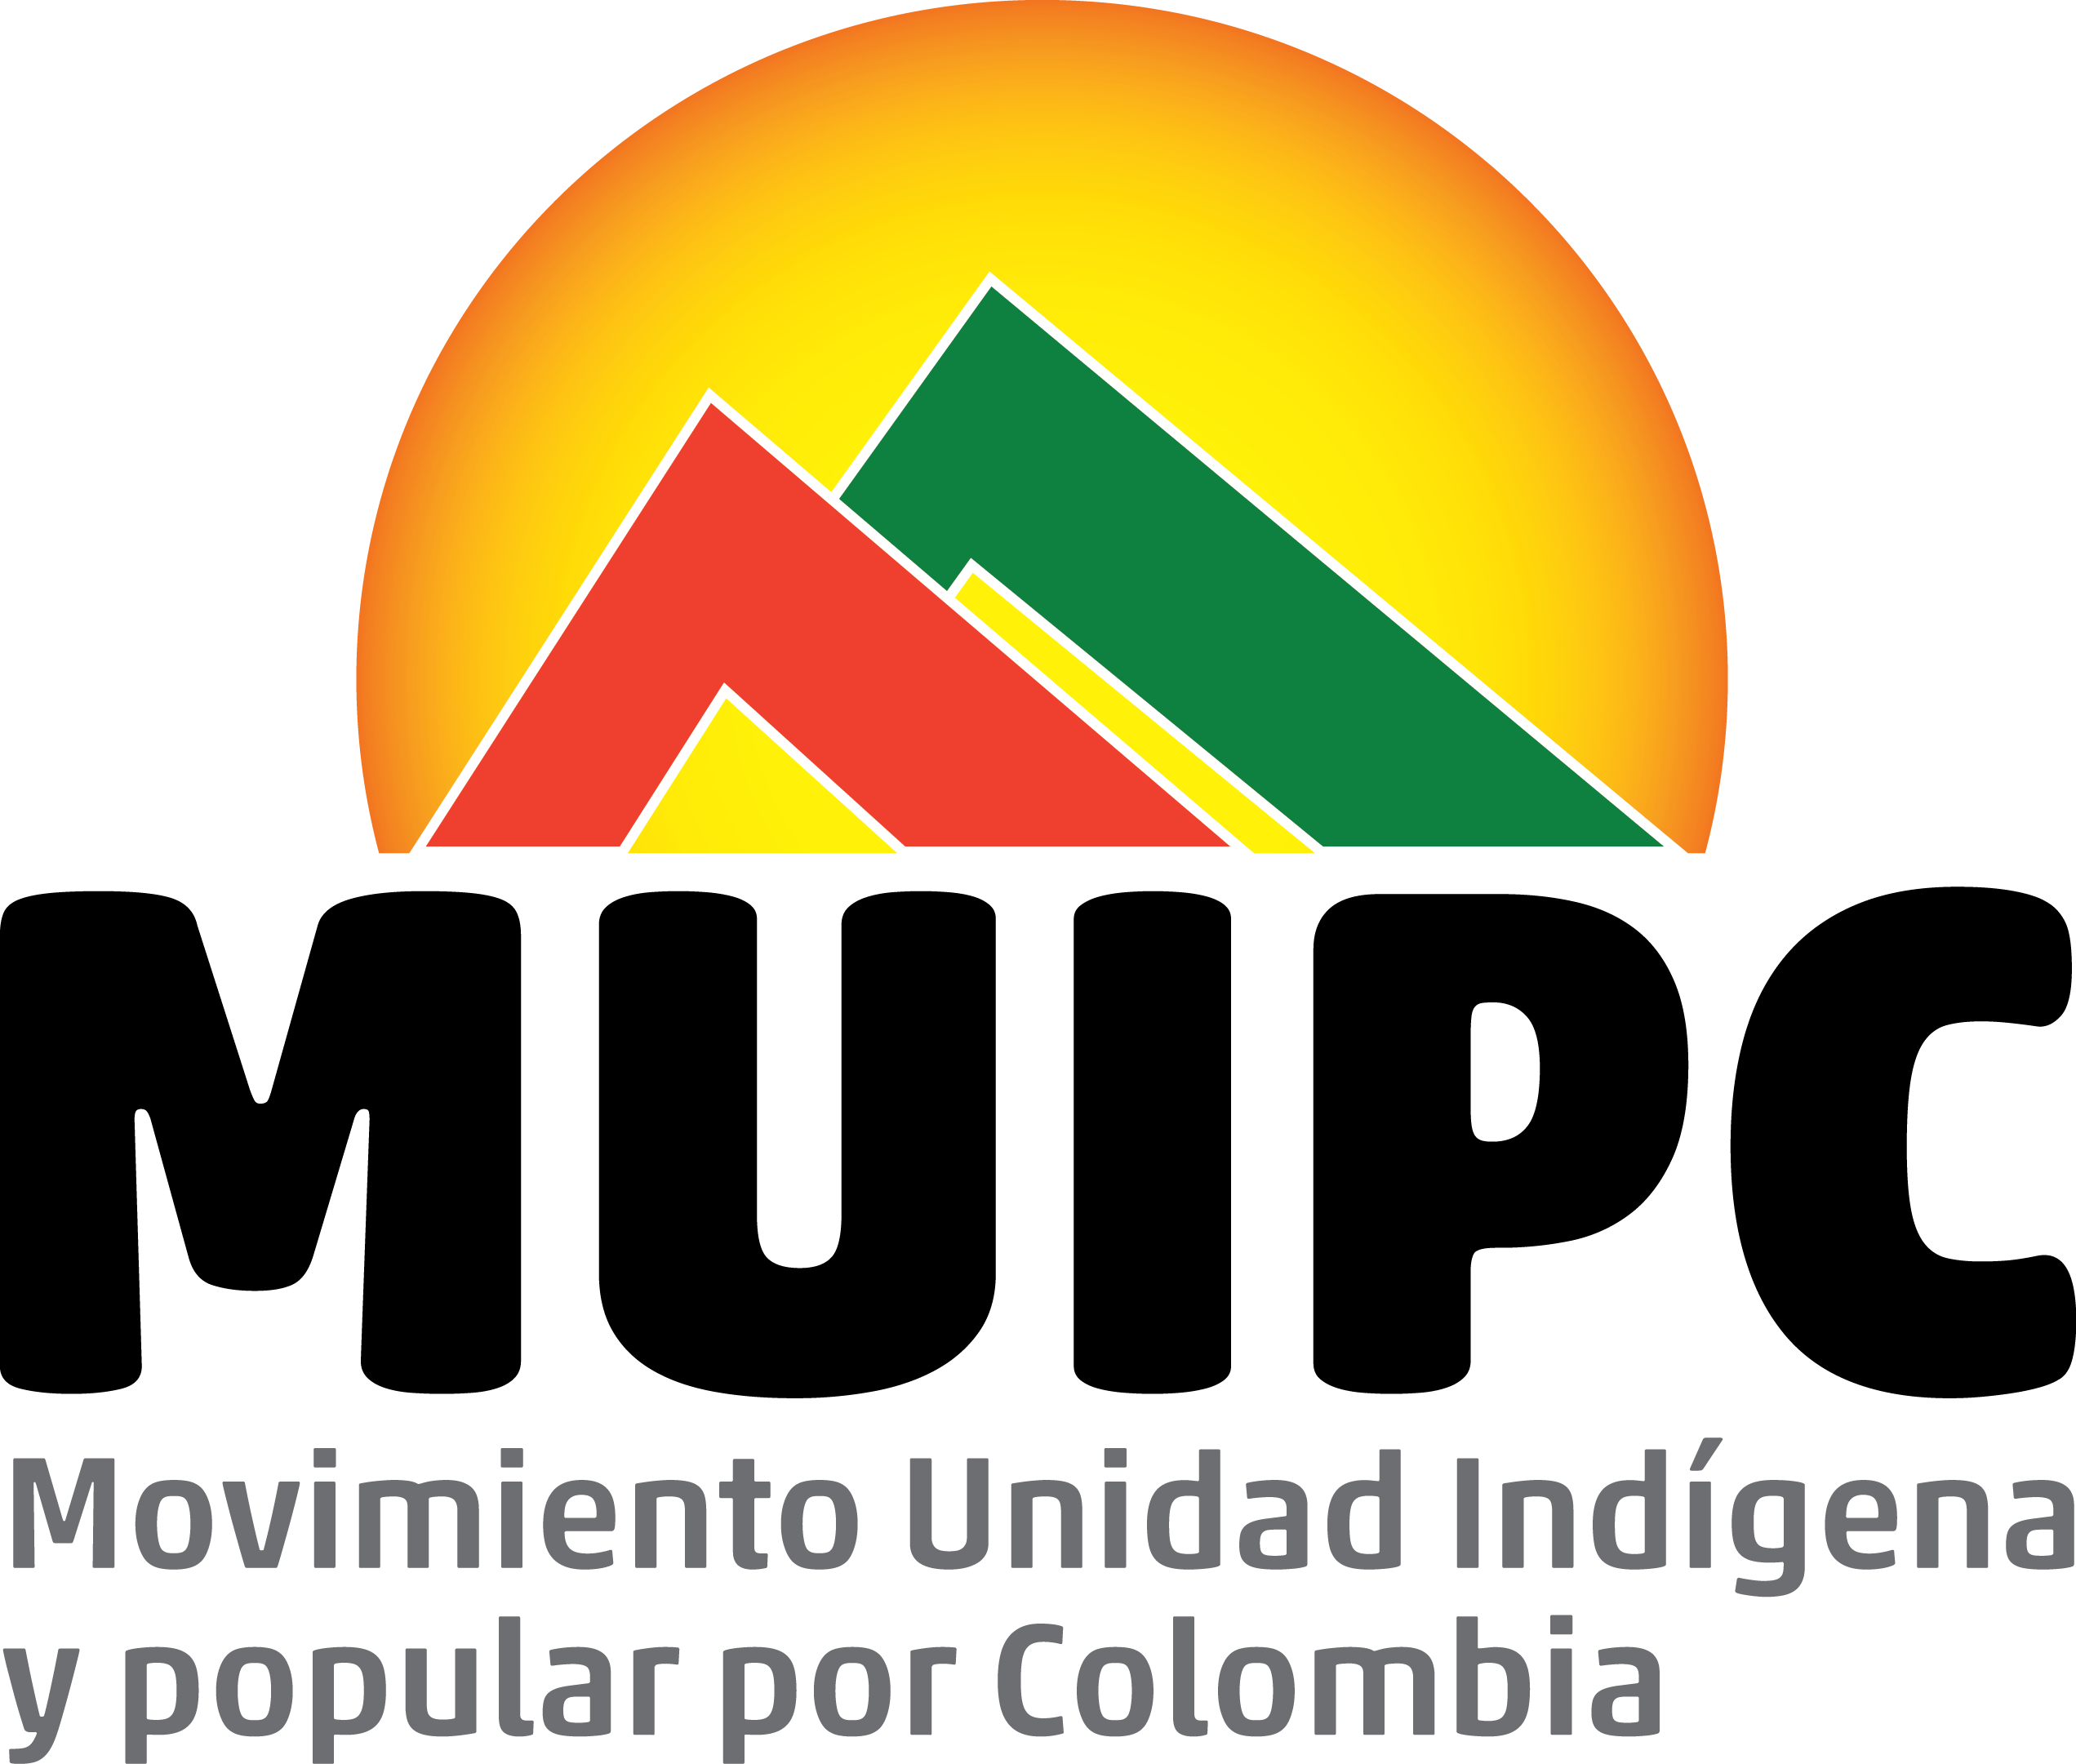 MUIPC - Movimiento Unidad Indígena y Popular por Colombia